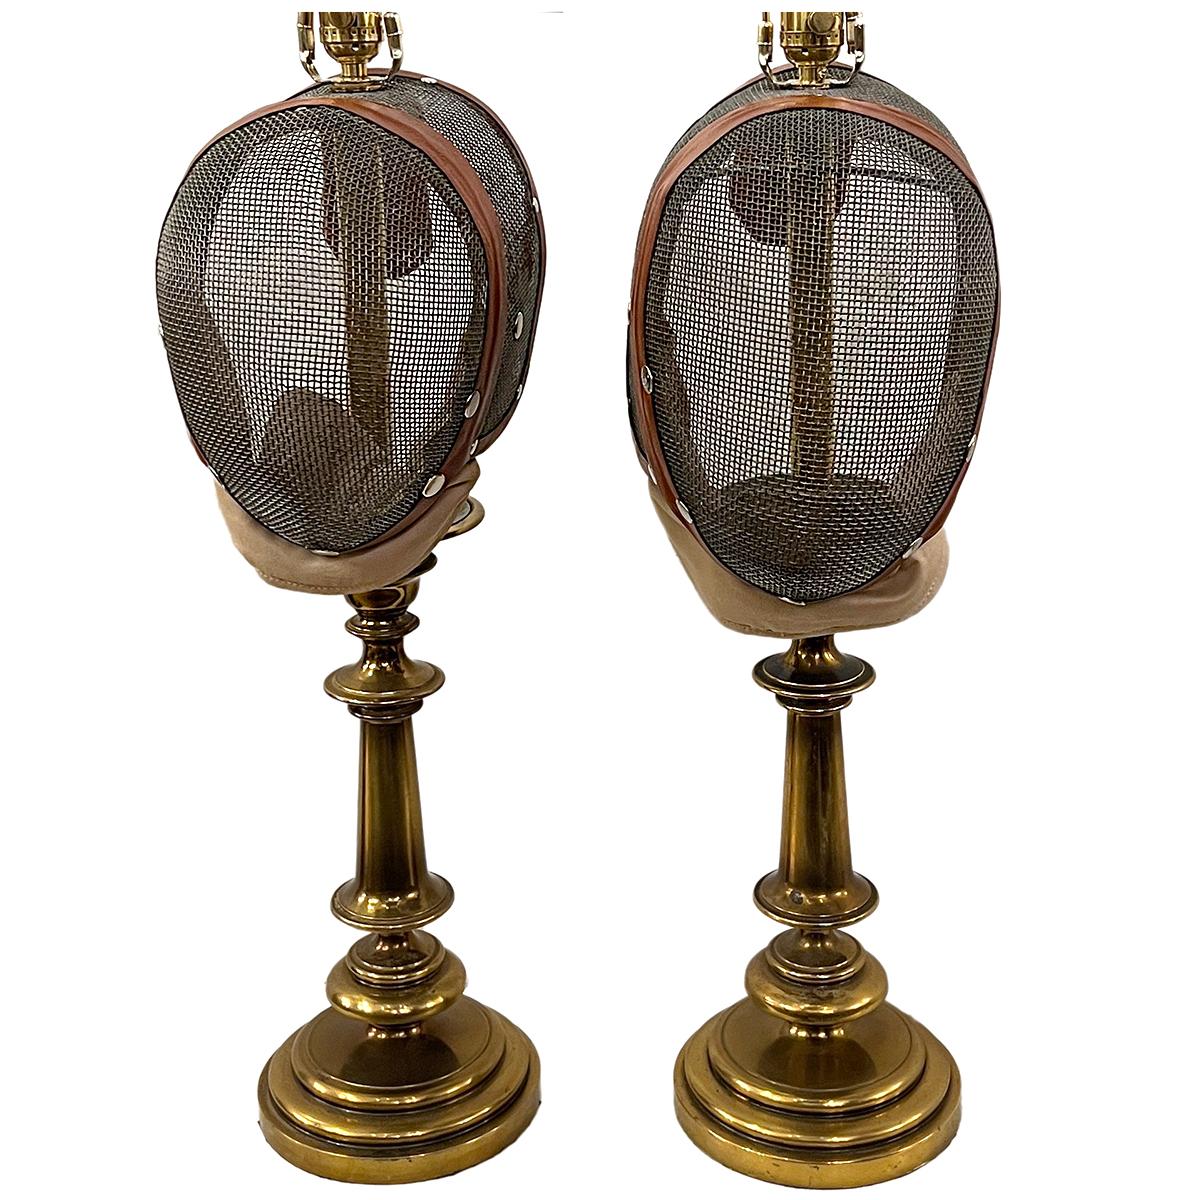 Paire de lampes de table en forme de masque d'escrime à base de bronze, datant des années 1950.

Mesures :
Hauteur du corps : 26 pouces
Hauteur jusqu'à l'appui de l'abat-jour : 34